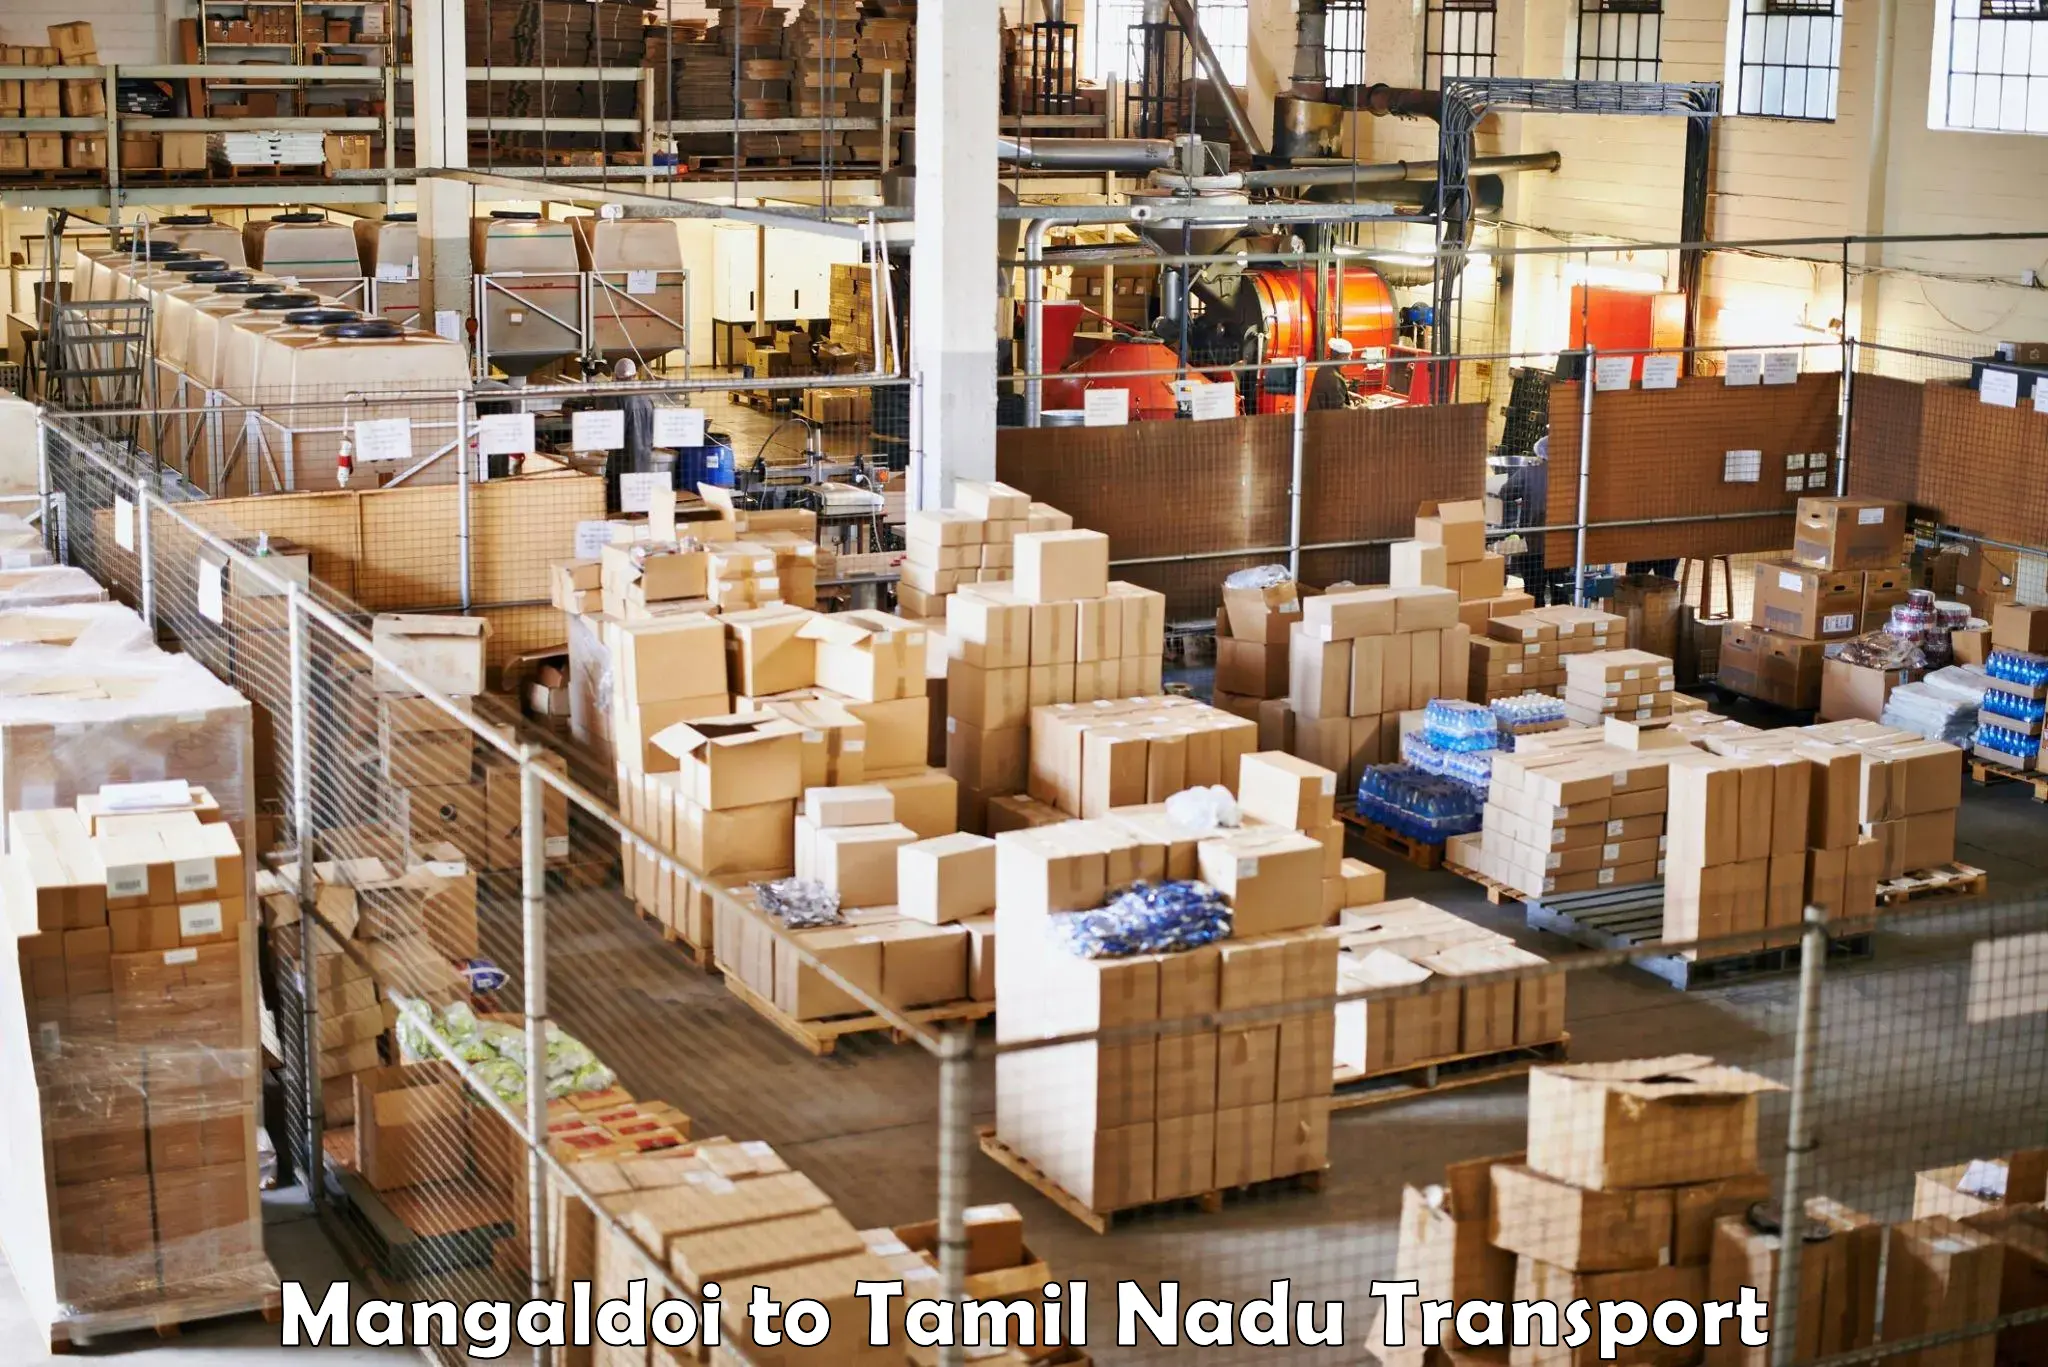 Transport services Mangaldoi to Vallioor